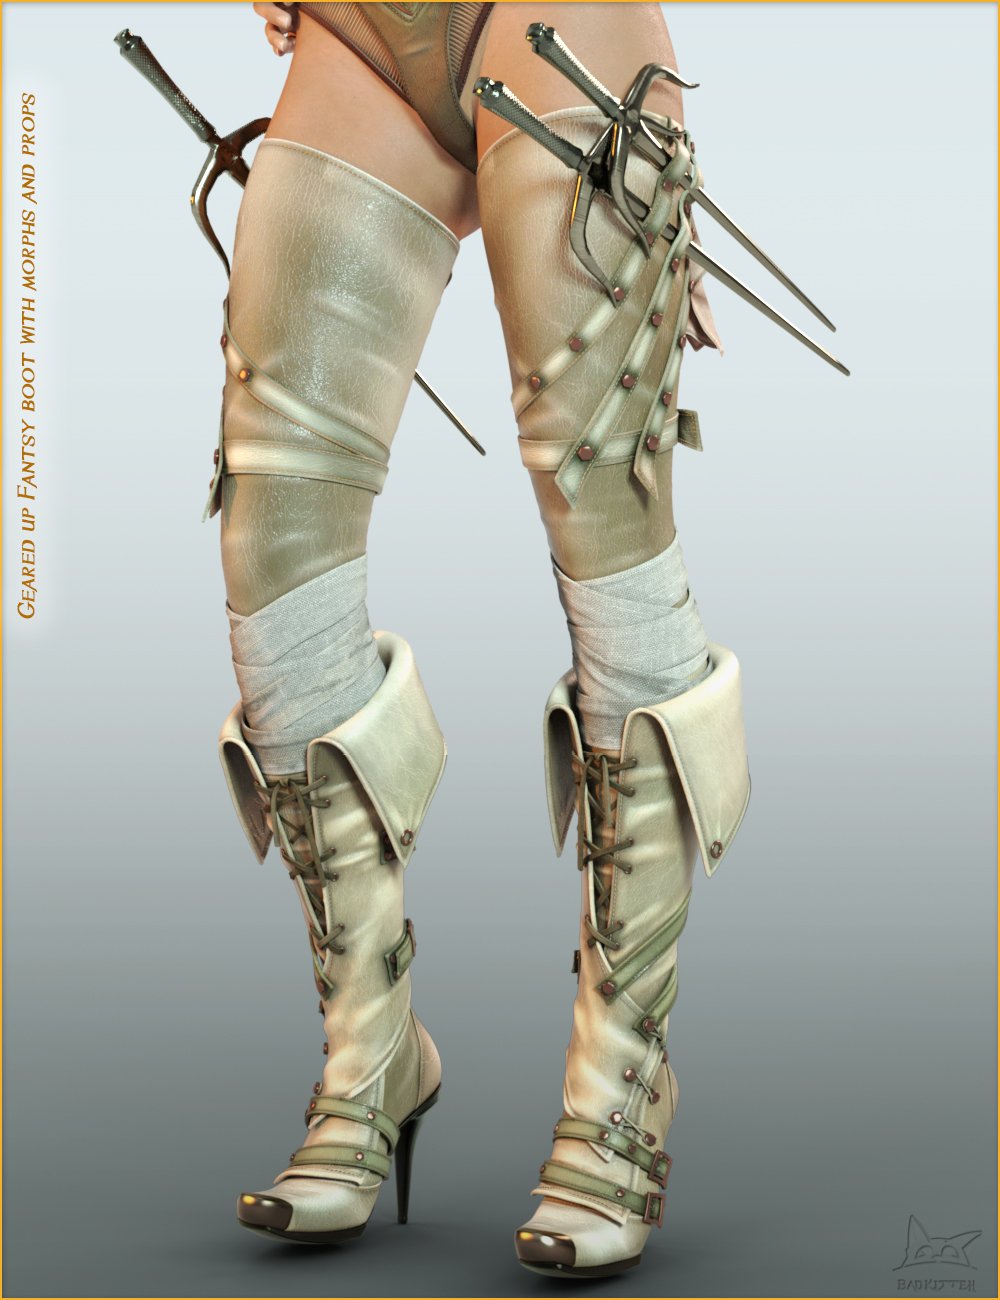 Bootleggers 2 - Double Trouble for Genesis 8 Female(s) by: BadKitteh Co, 3D Models by Daz 3D